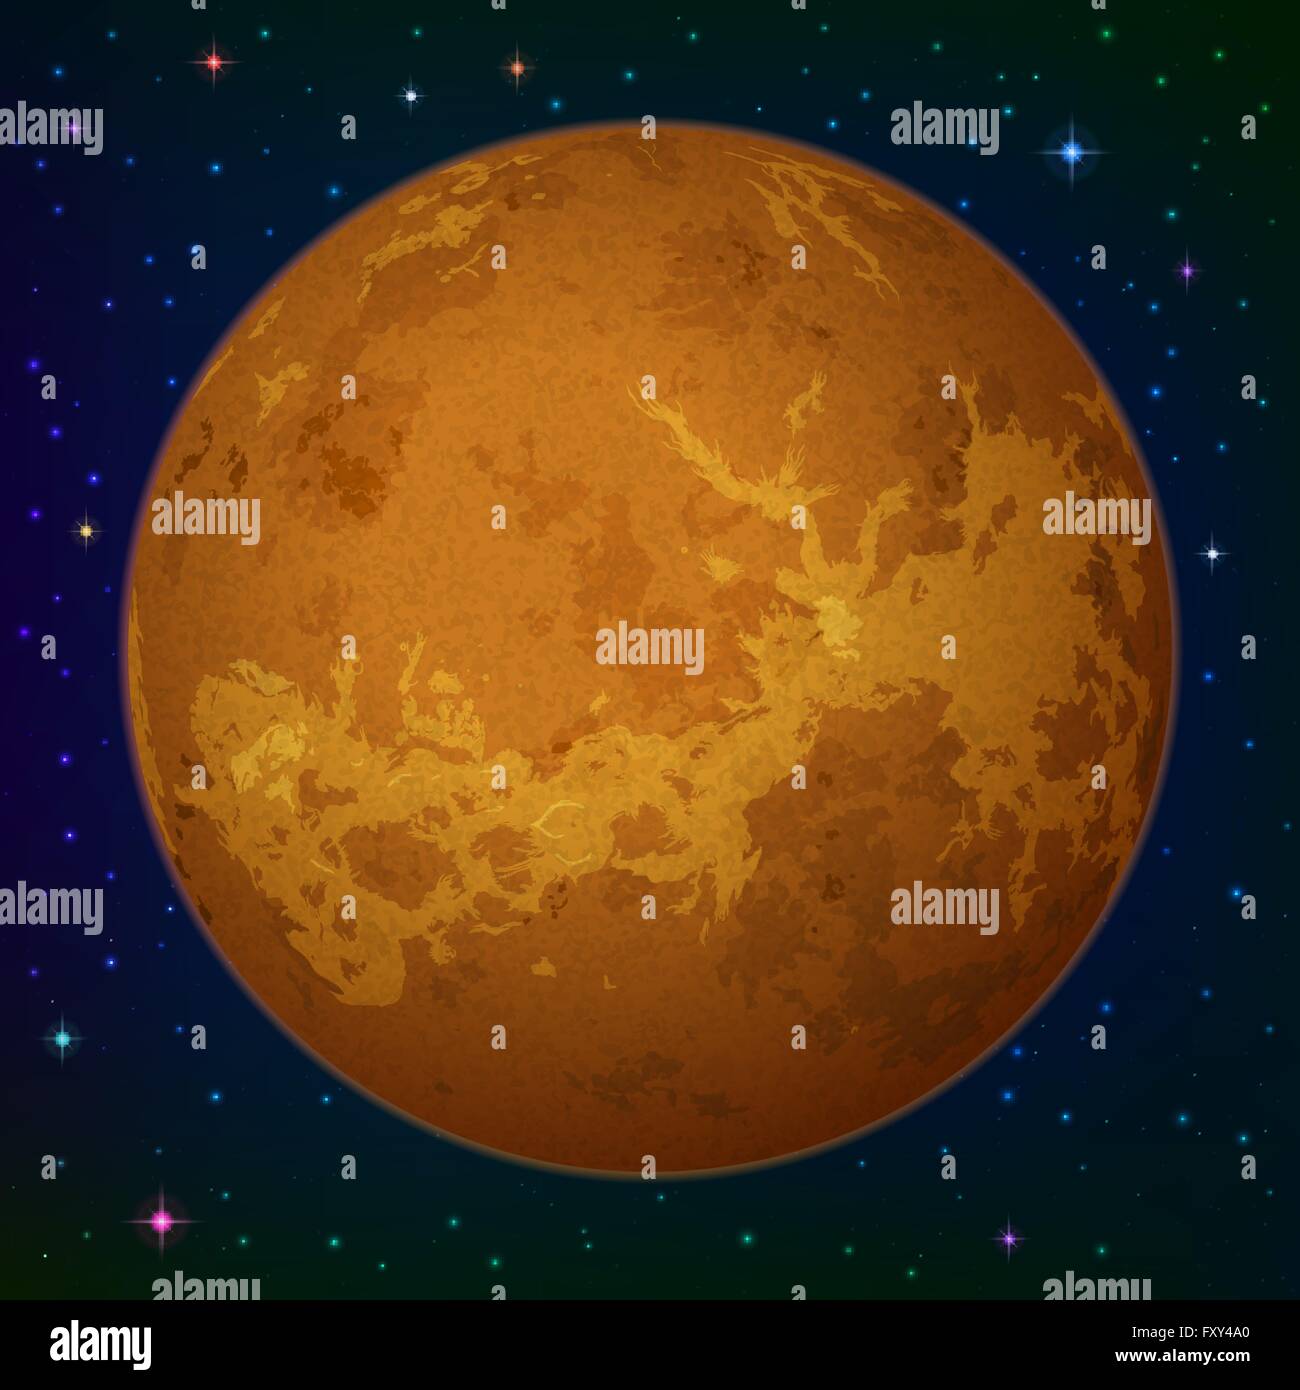 La planète Vénus dans l'espace Illustration de Vecteur